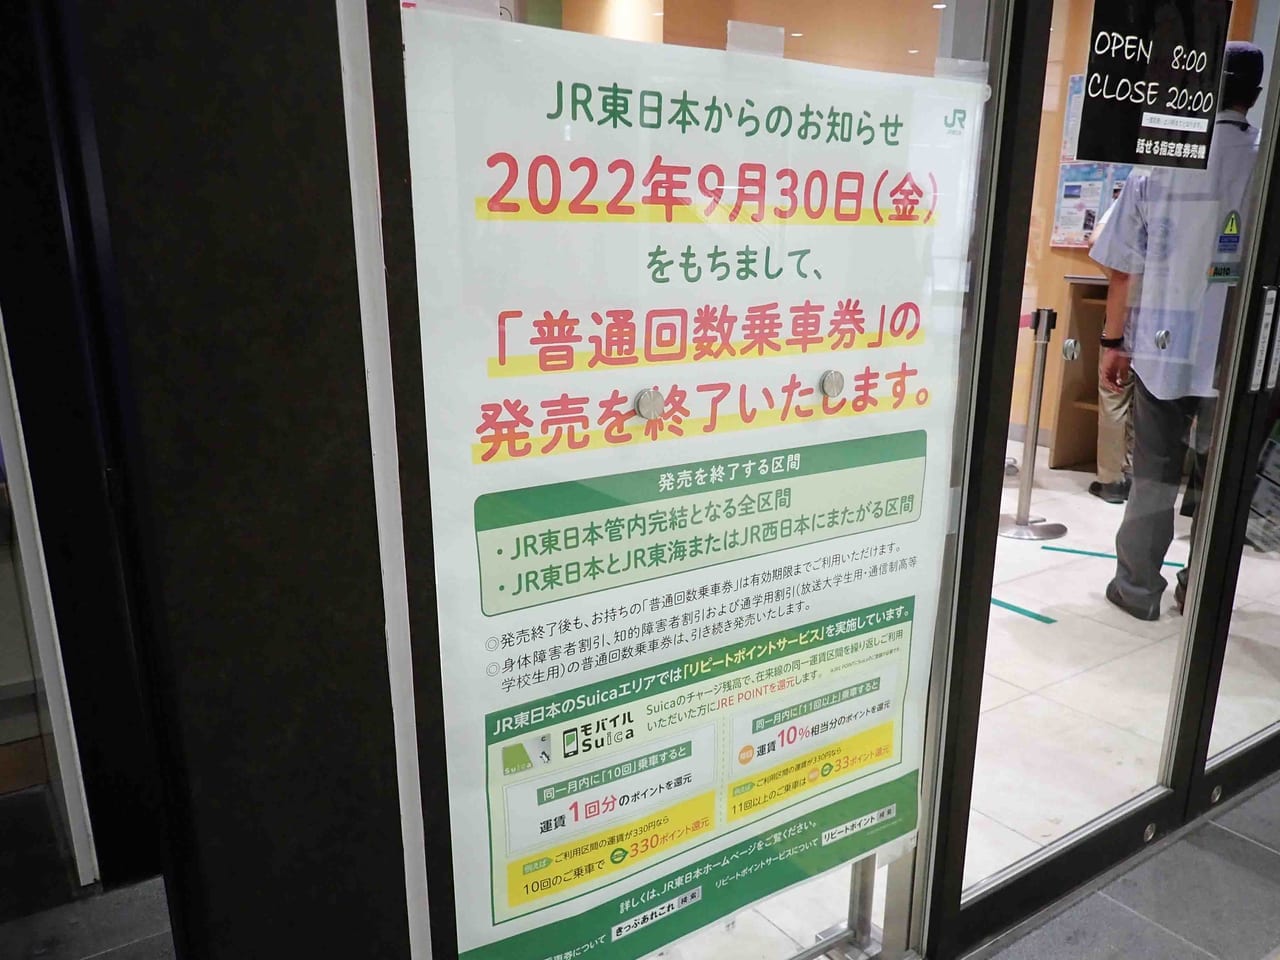 2022年9月末に回数券の販売を終了するJR東日本